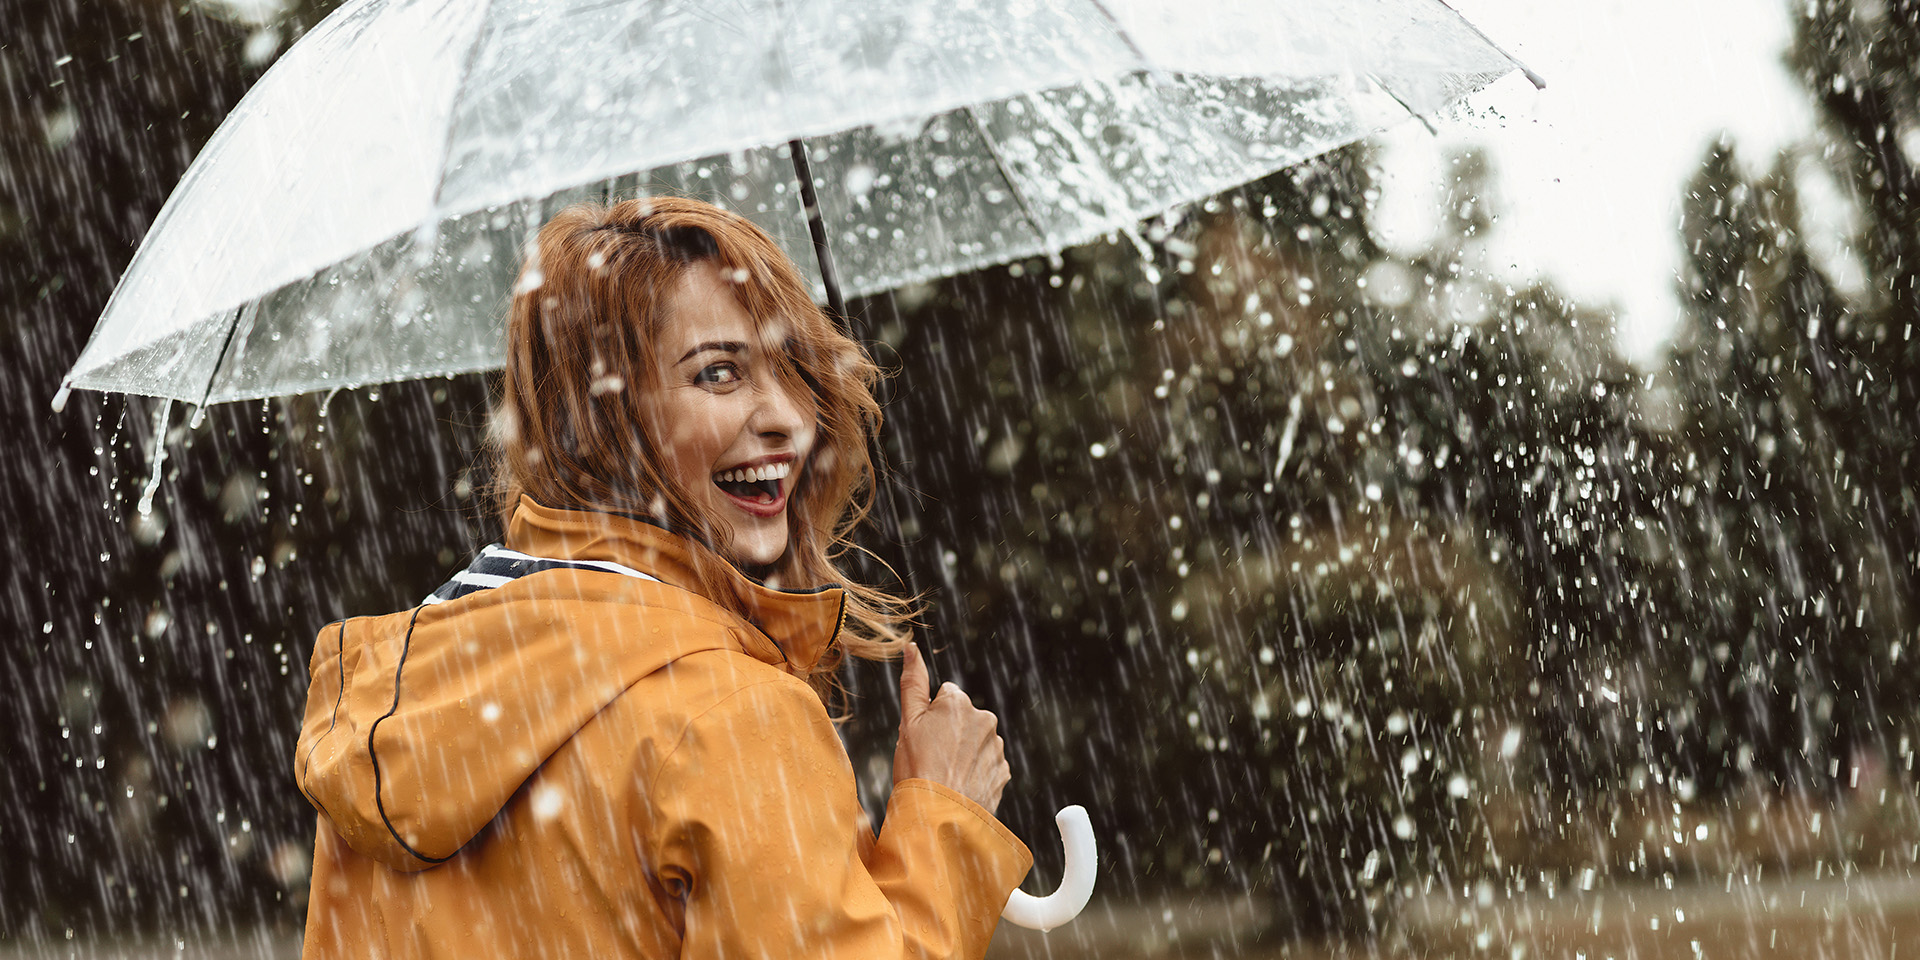 Frau steht im Regen unter dem Regenschirm und lächelt